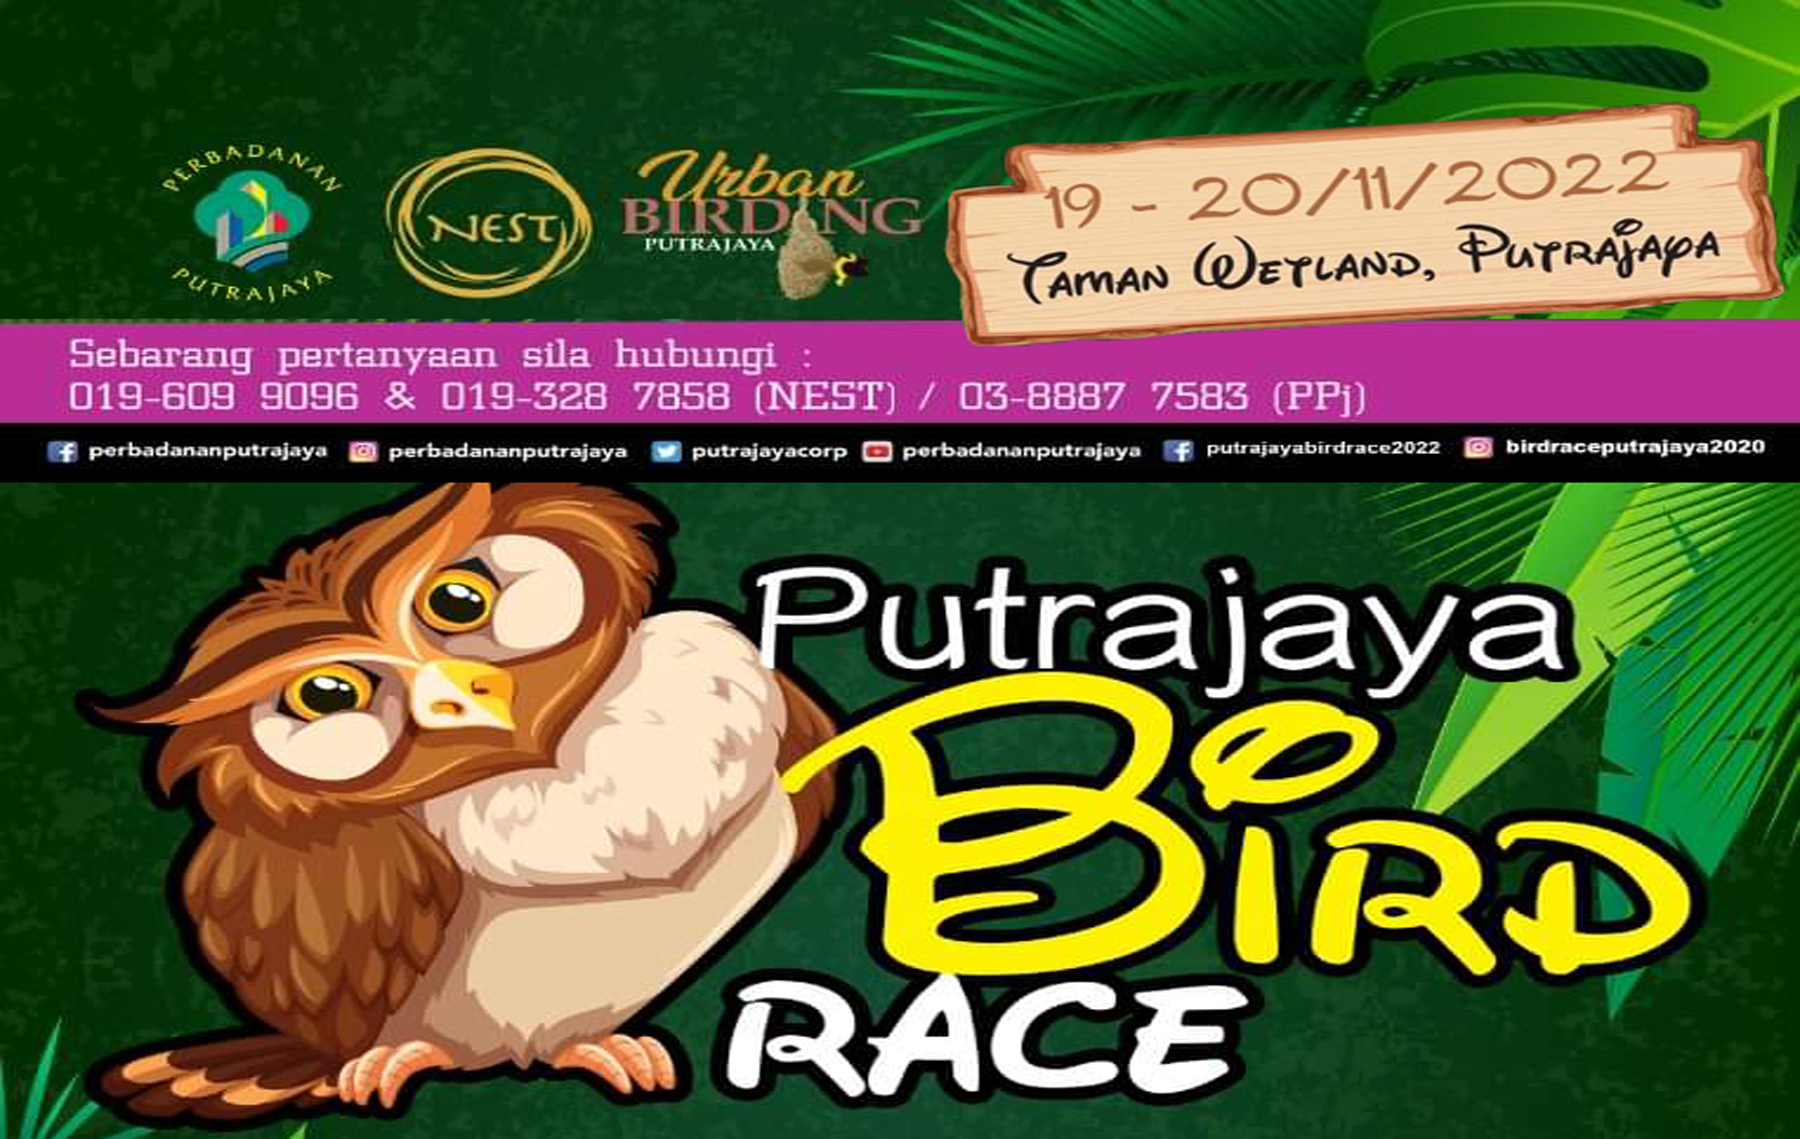 Bird Race Putrajaya